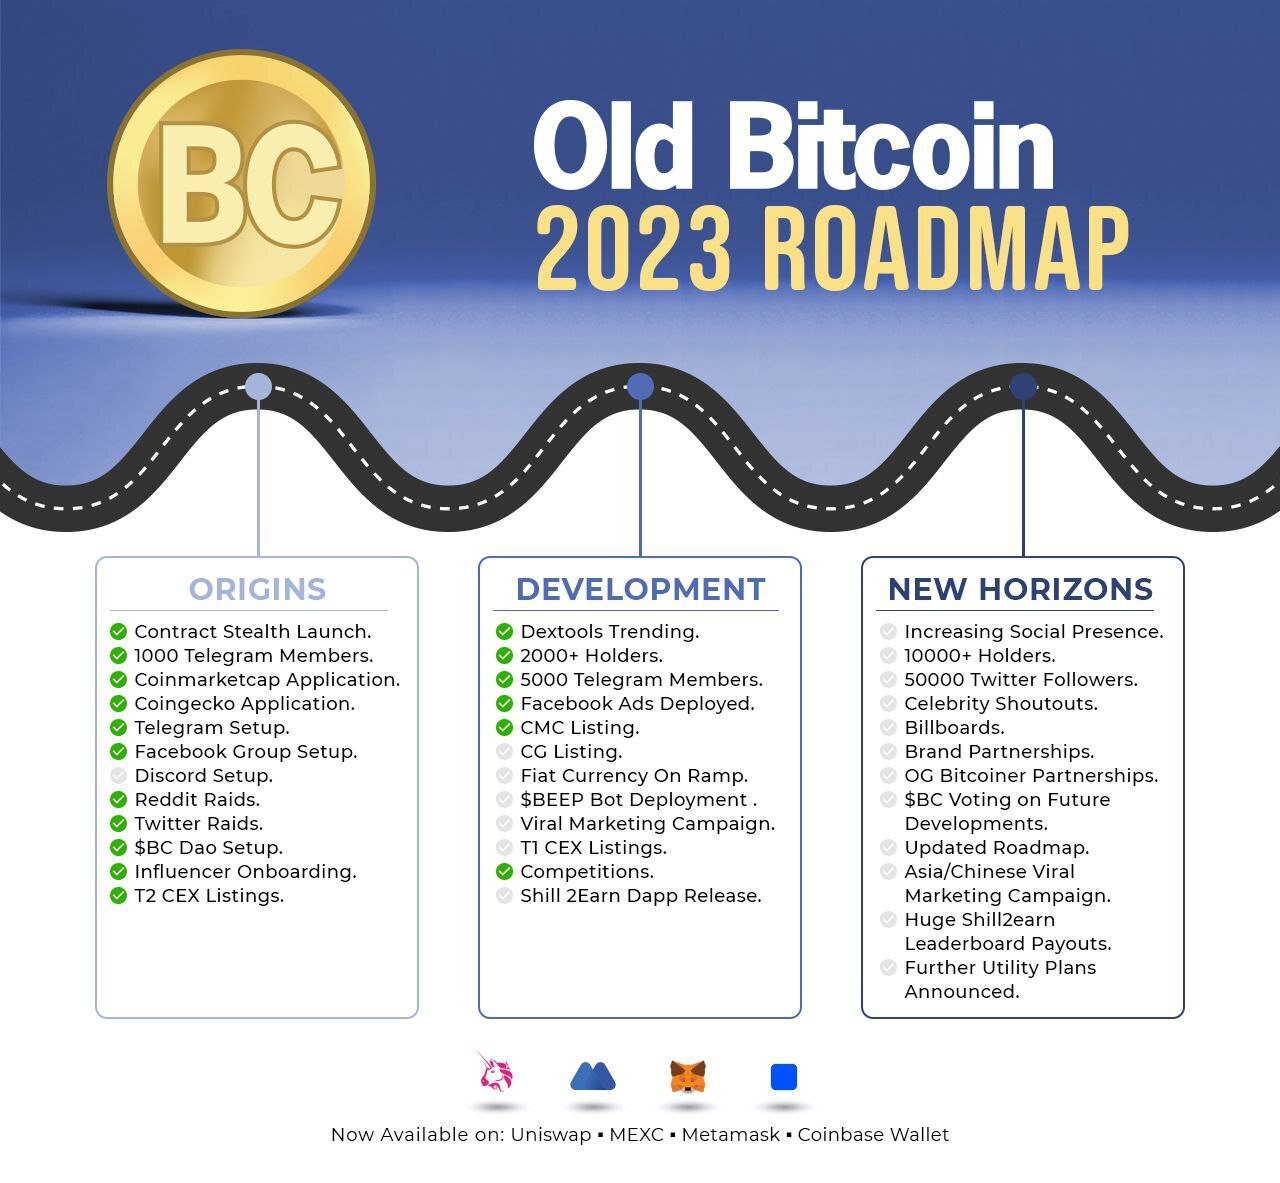 Old Bitcoin Roadmap